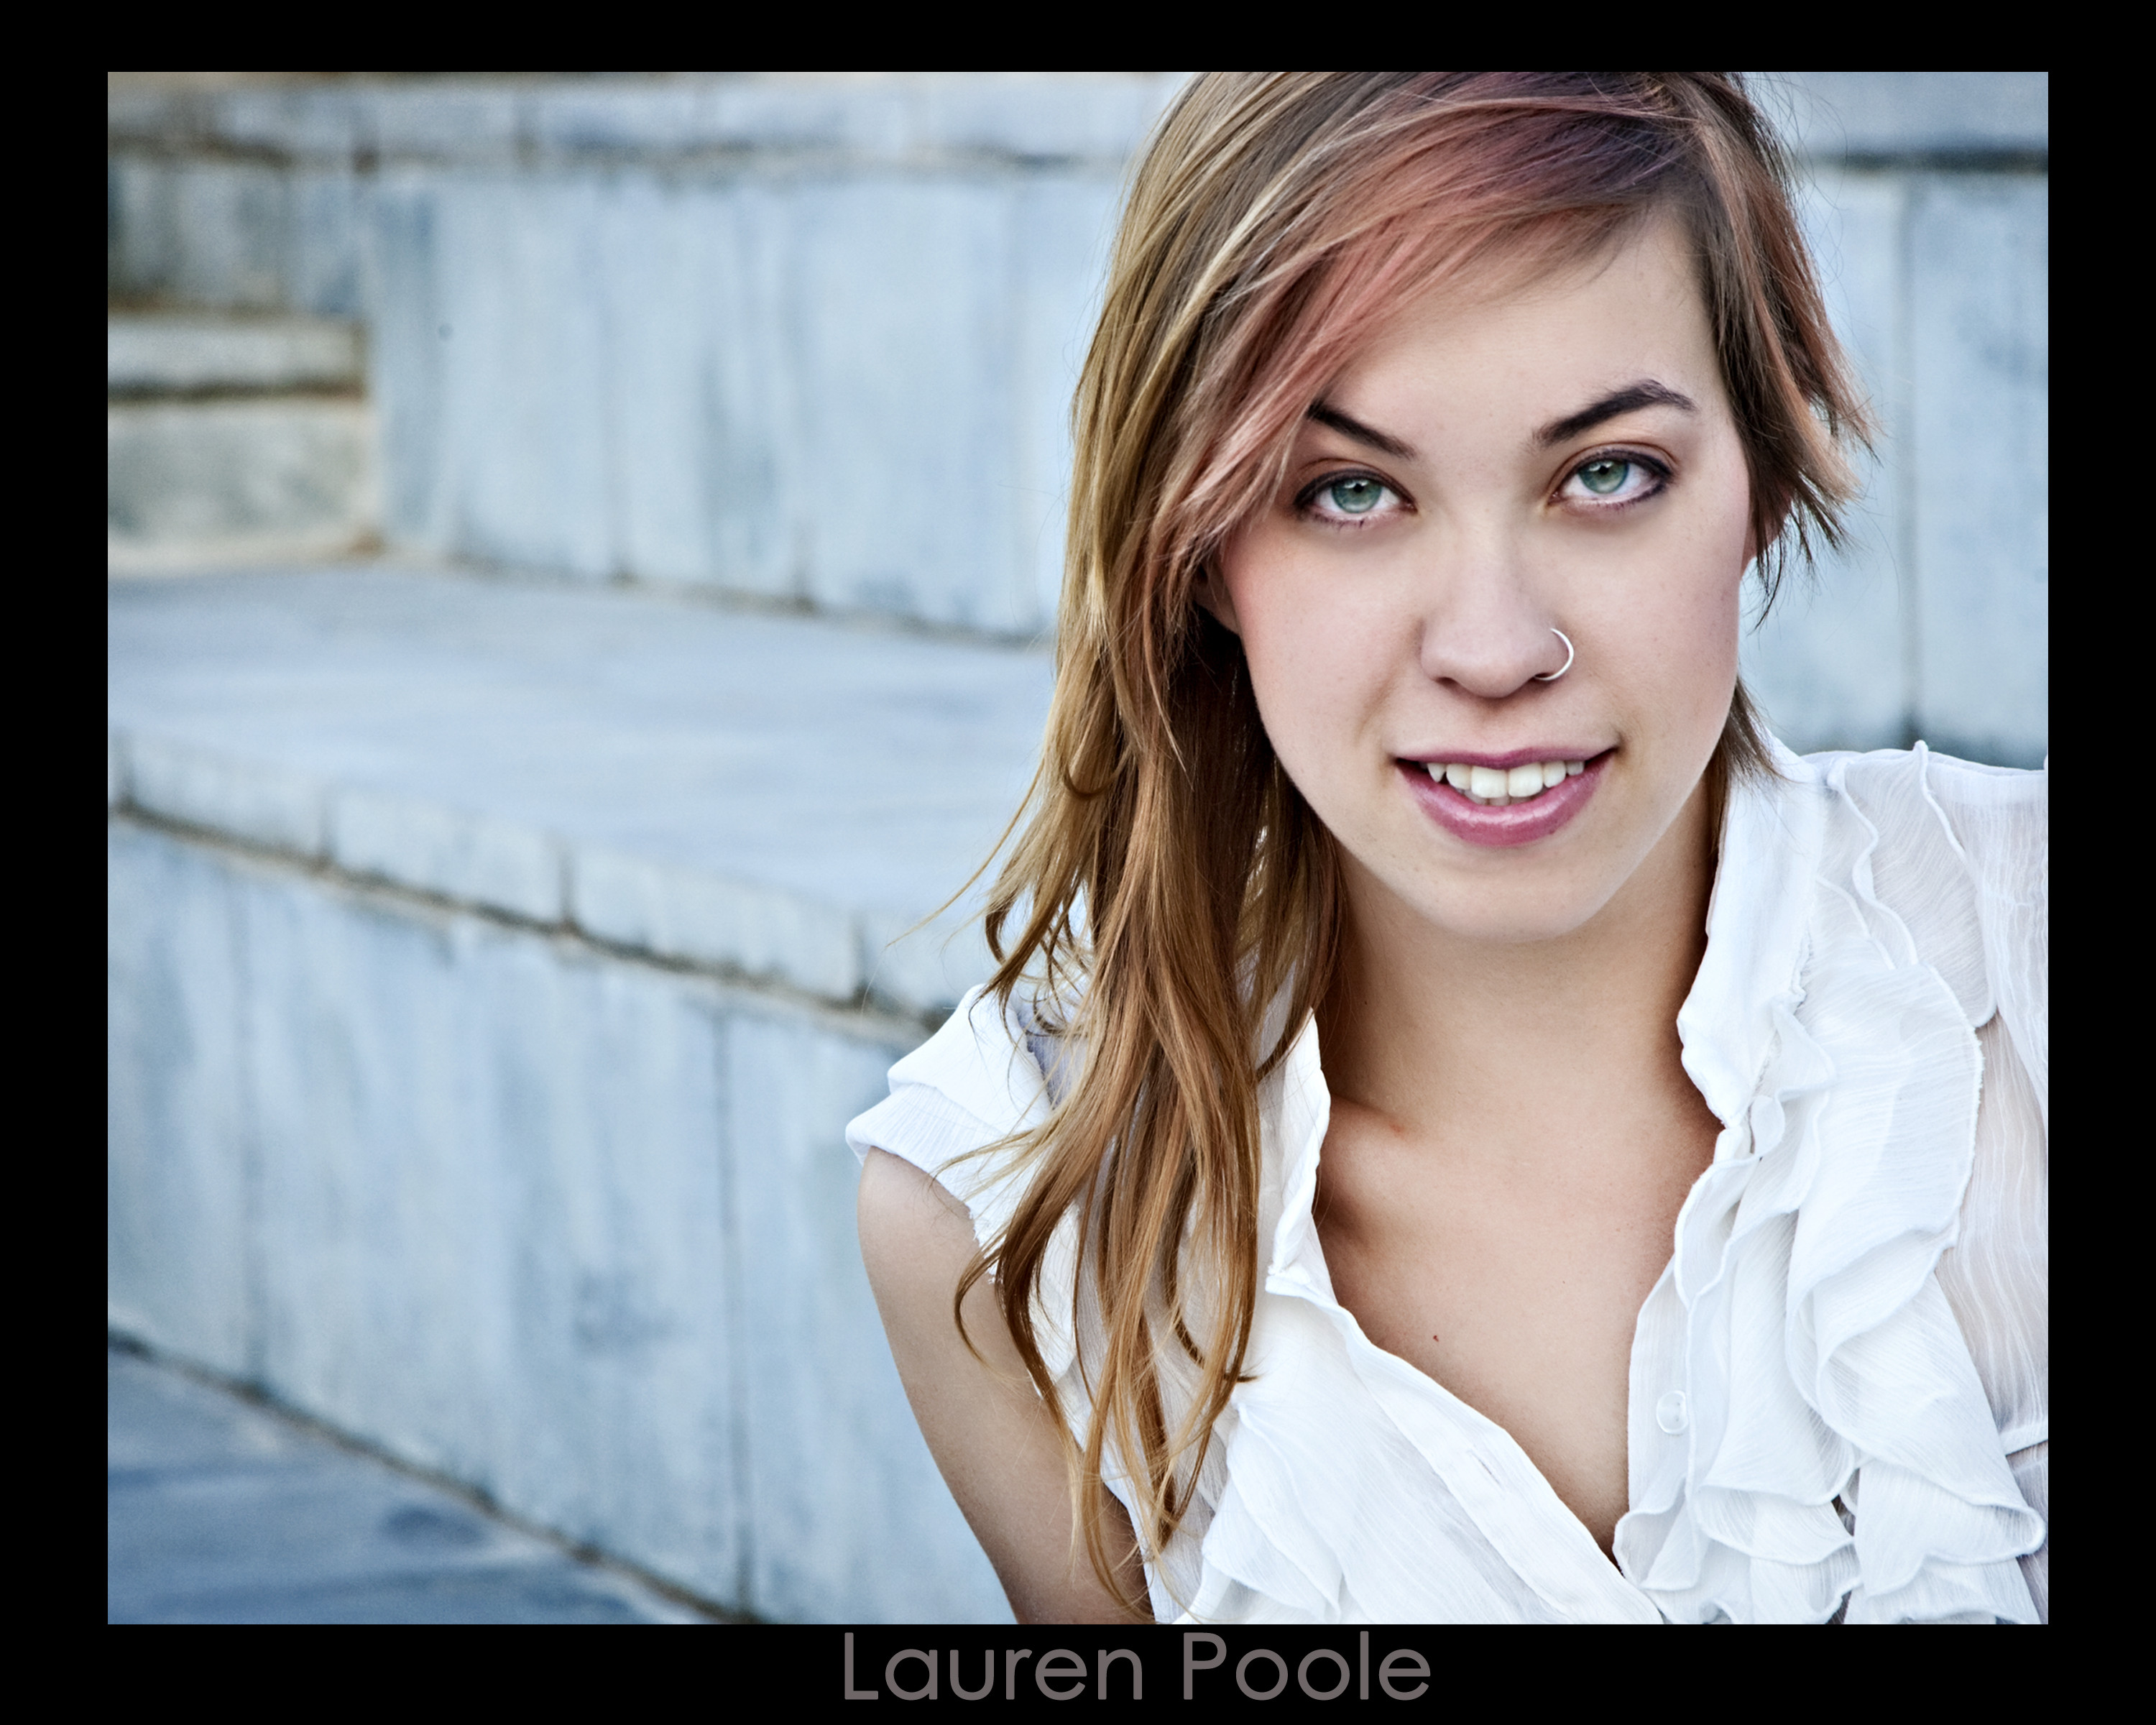 Lauren Poole